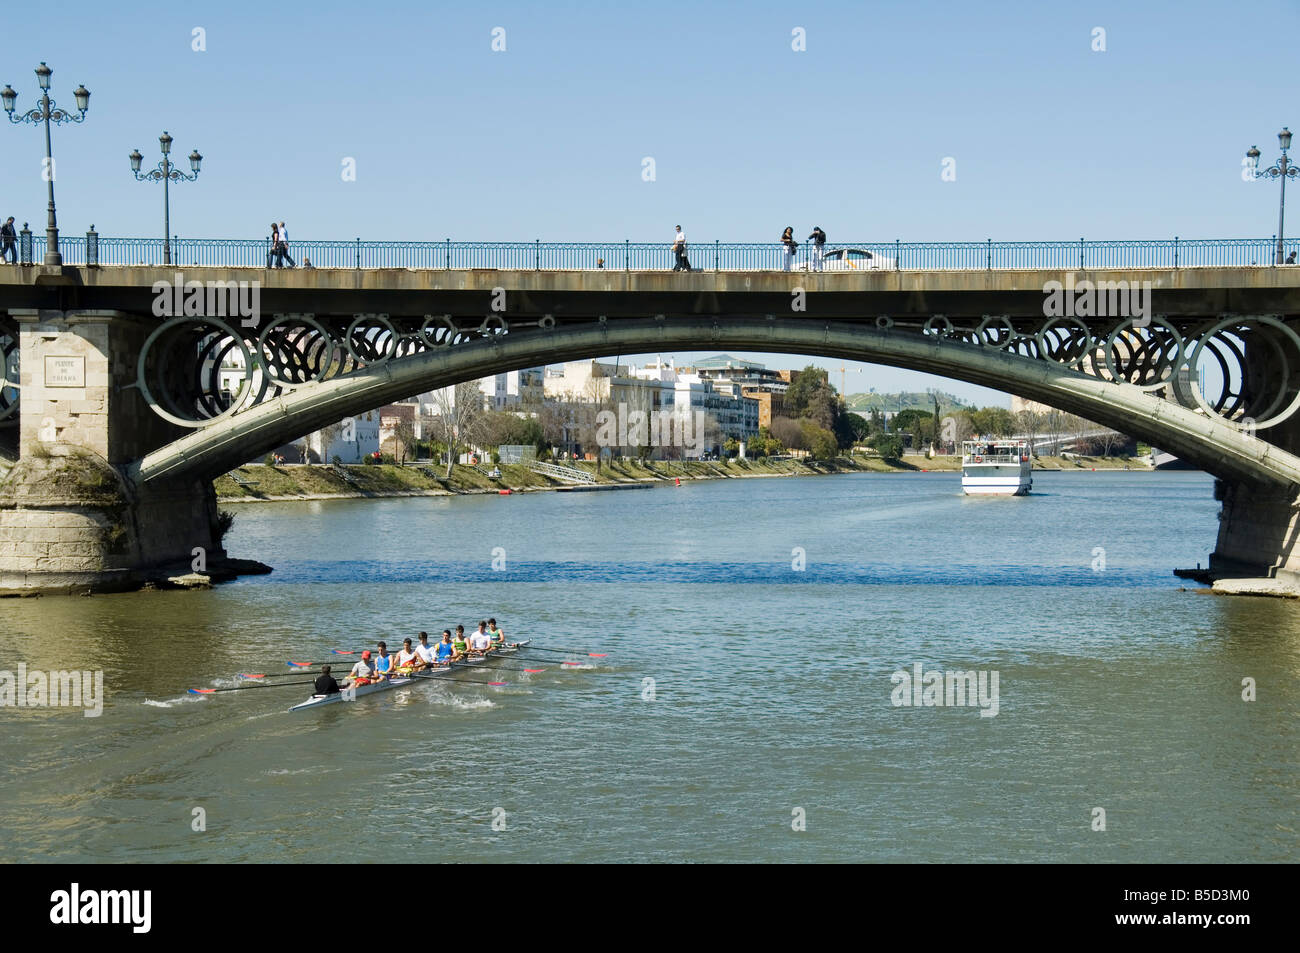 Puente de Isabel II, également connu sous le nom de Puente de Triana, rivière Rio Guadalquivir, Séville, Andalousie, Espagne Banque D'Images